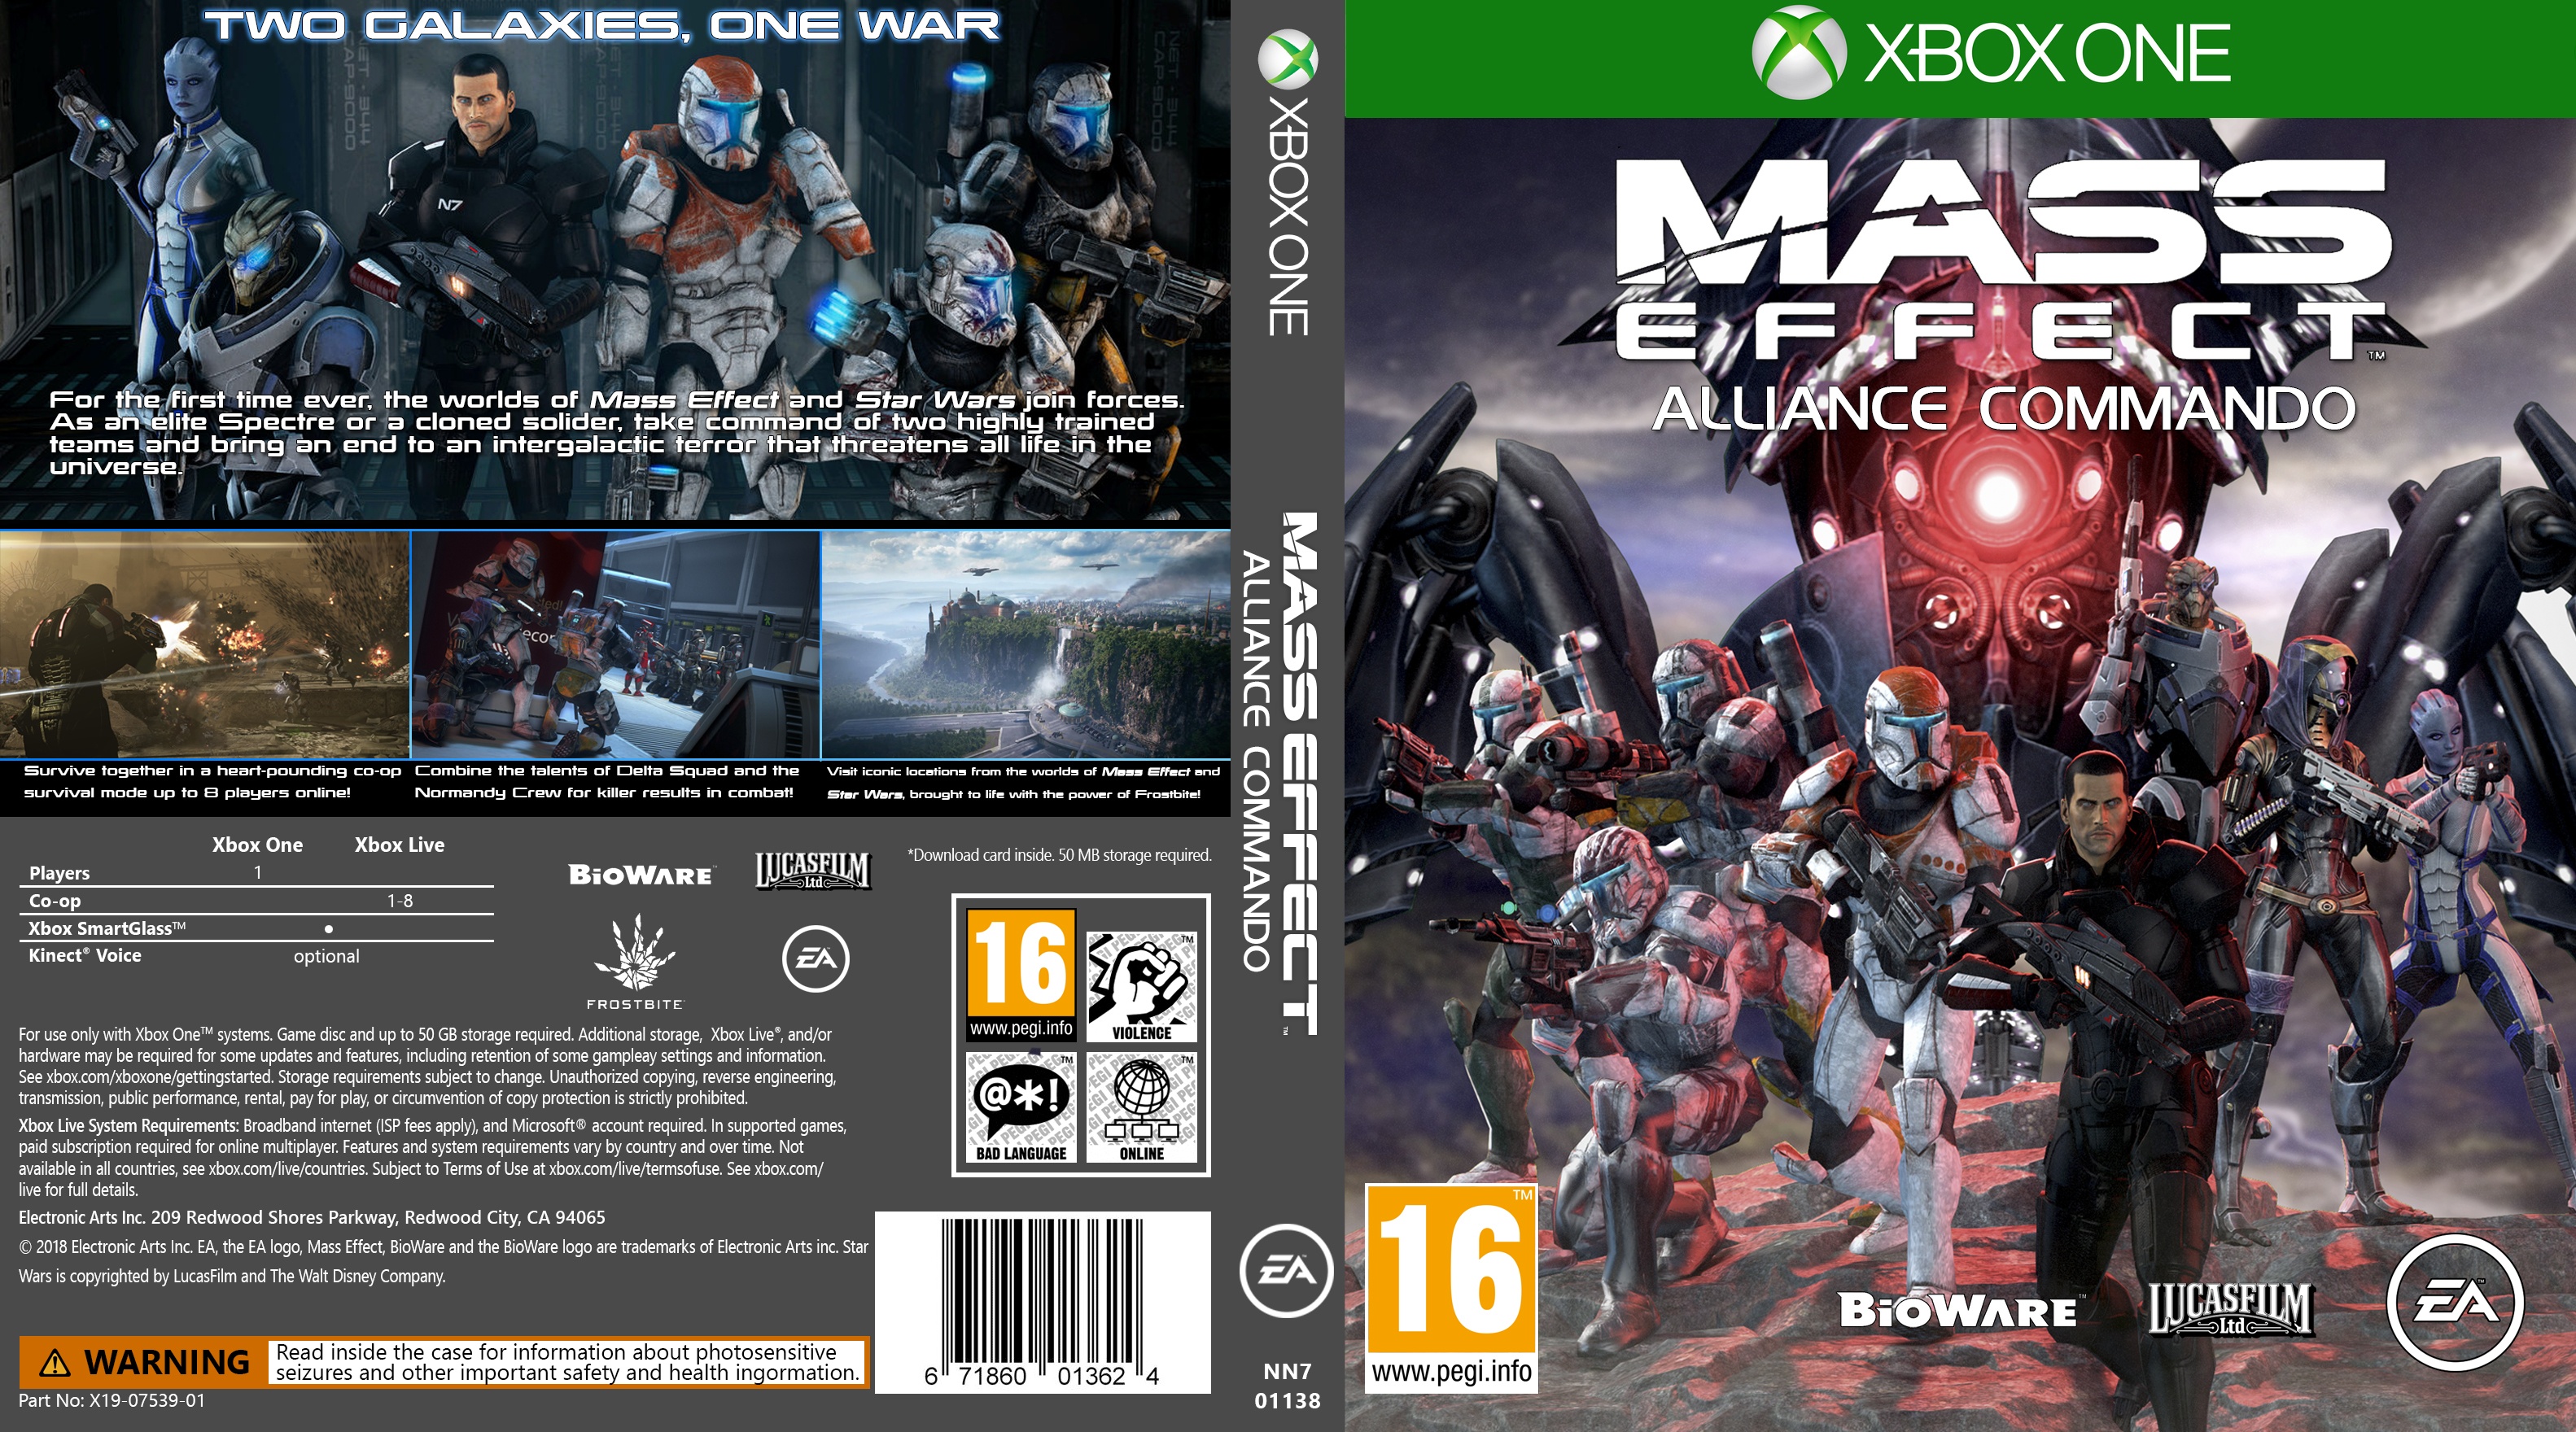 Mass Effect: Alliance Commando box cover